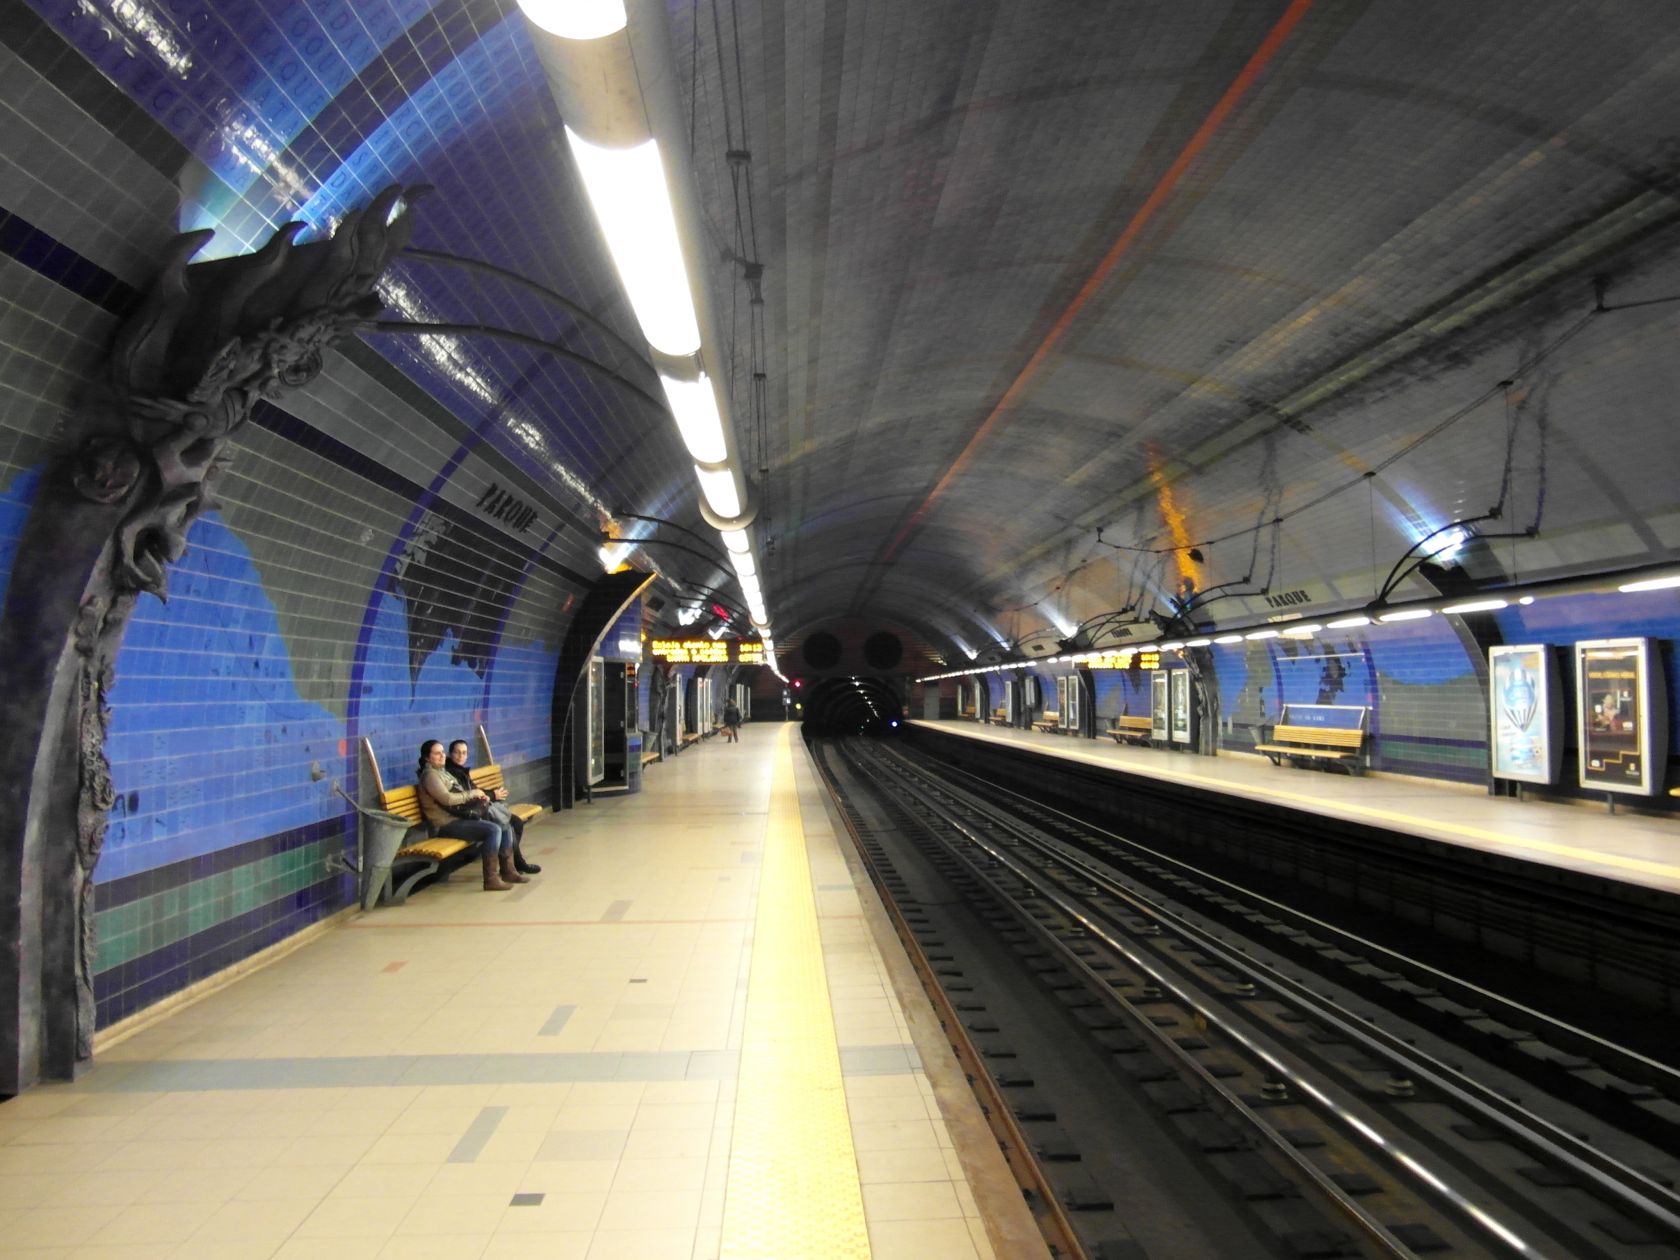 Ngắm nhìn vẻ đẹp thơ mộng của tàu điện ngầm Lisbon